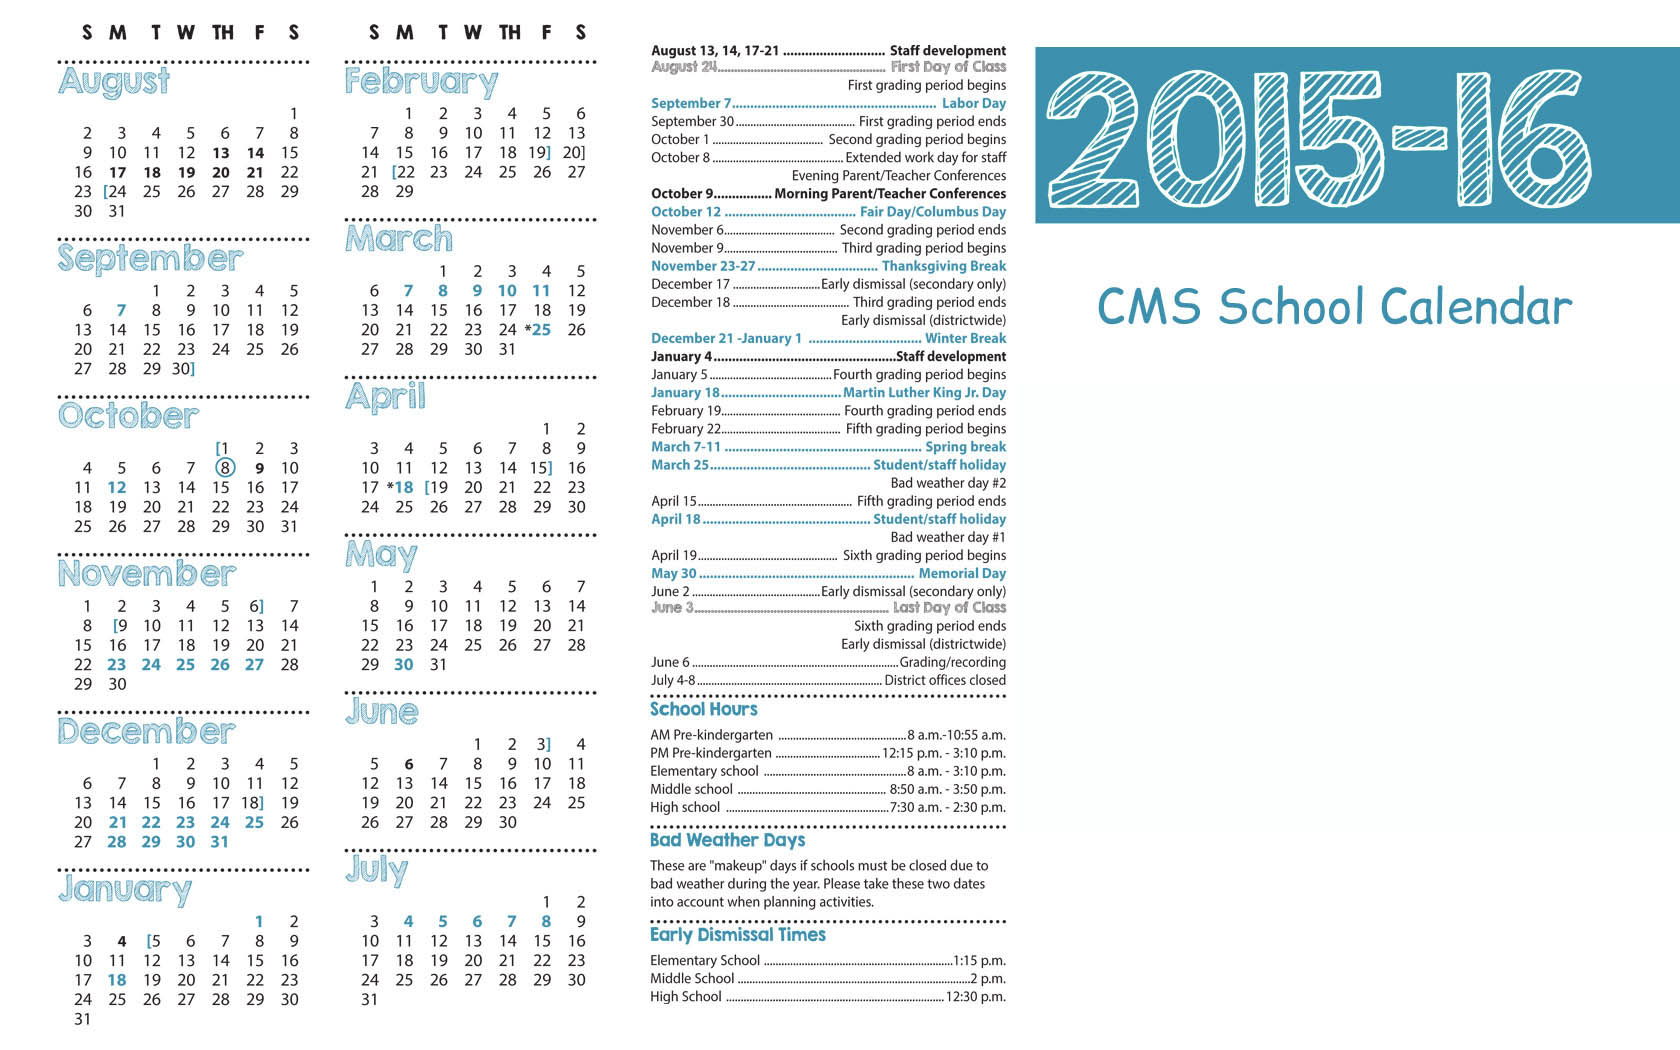 Coast Middle School 2015-2016 calendar